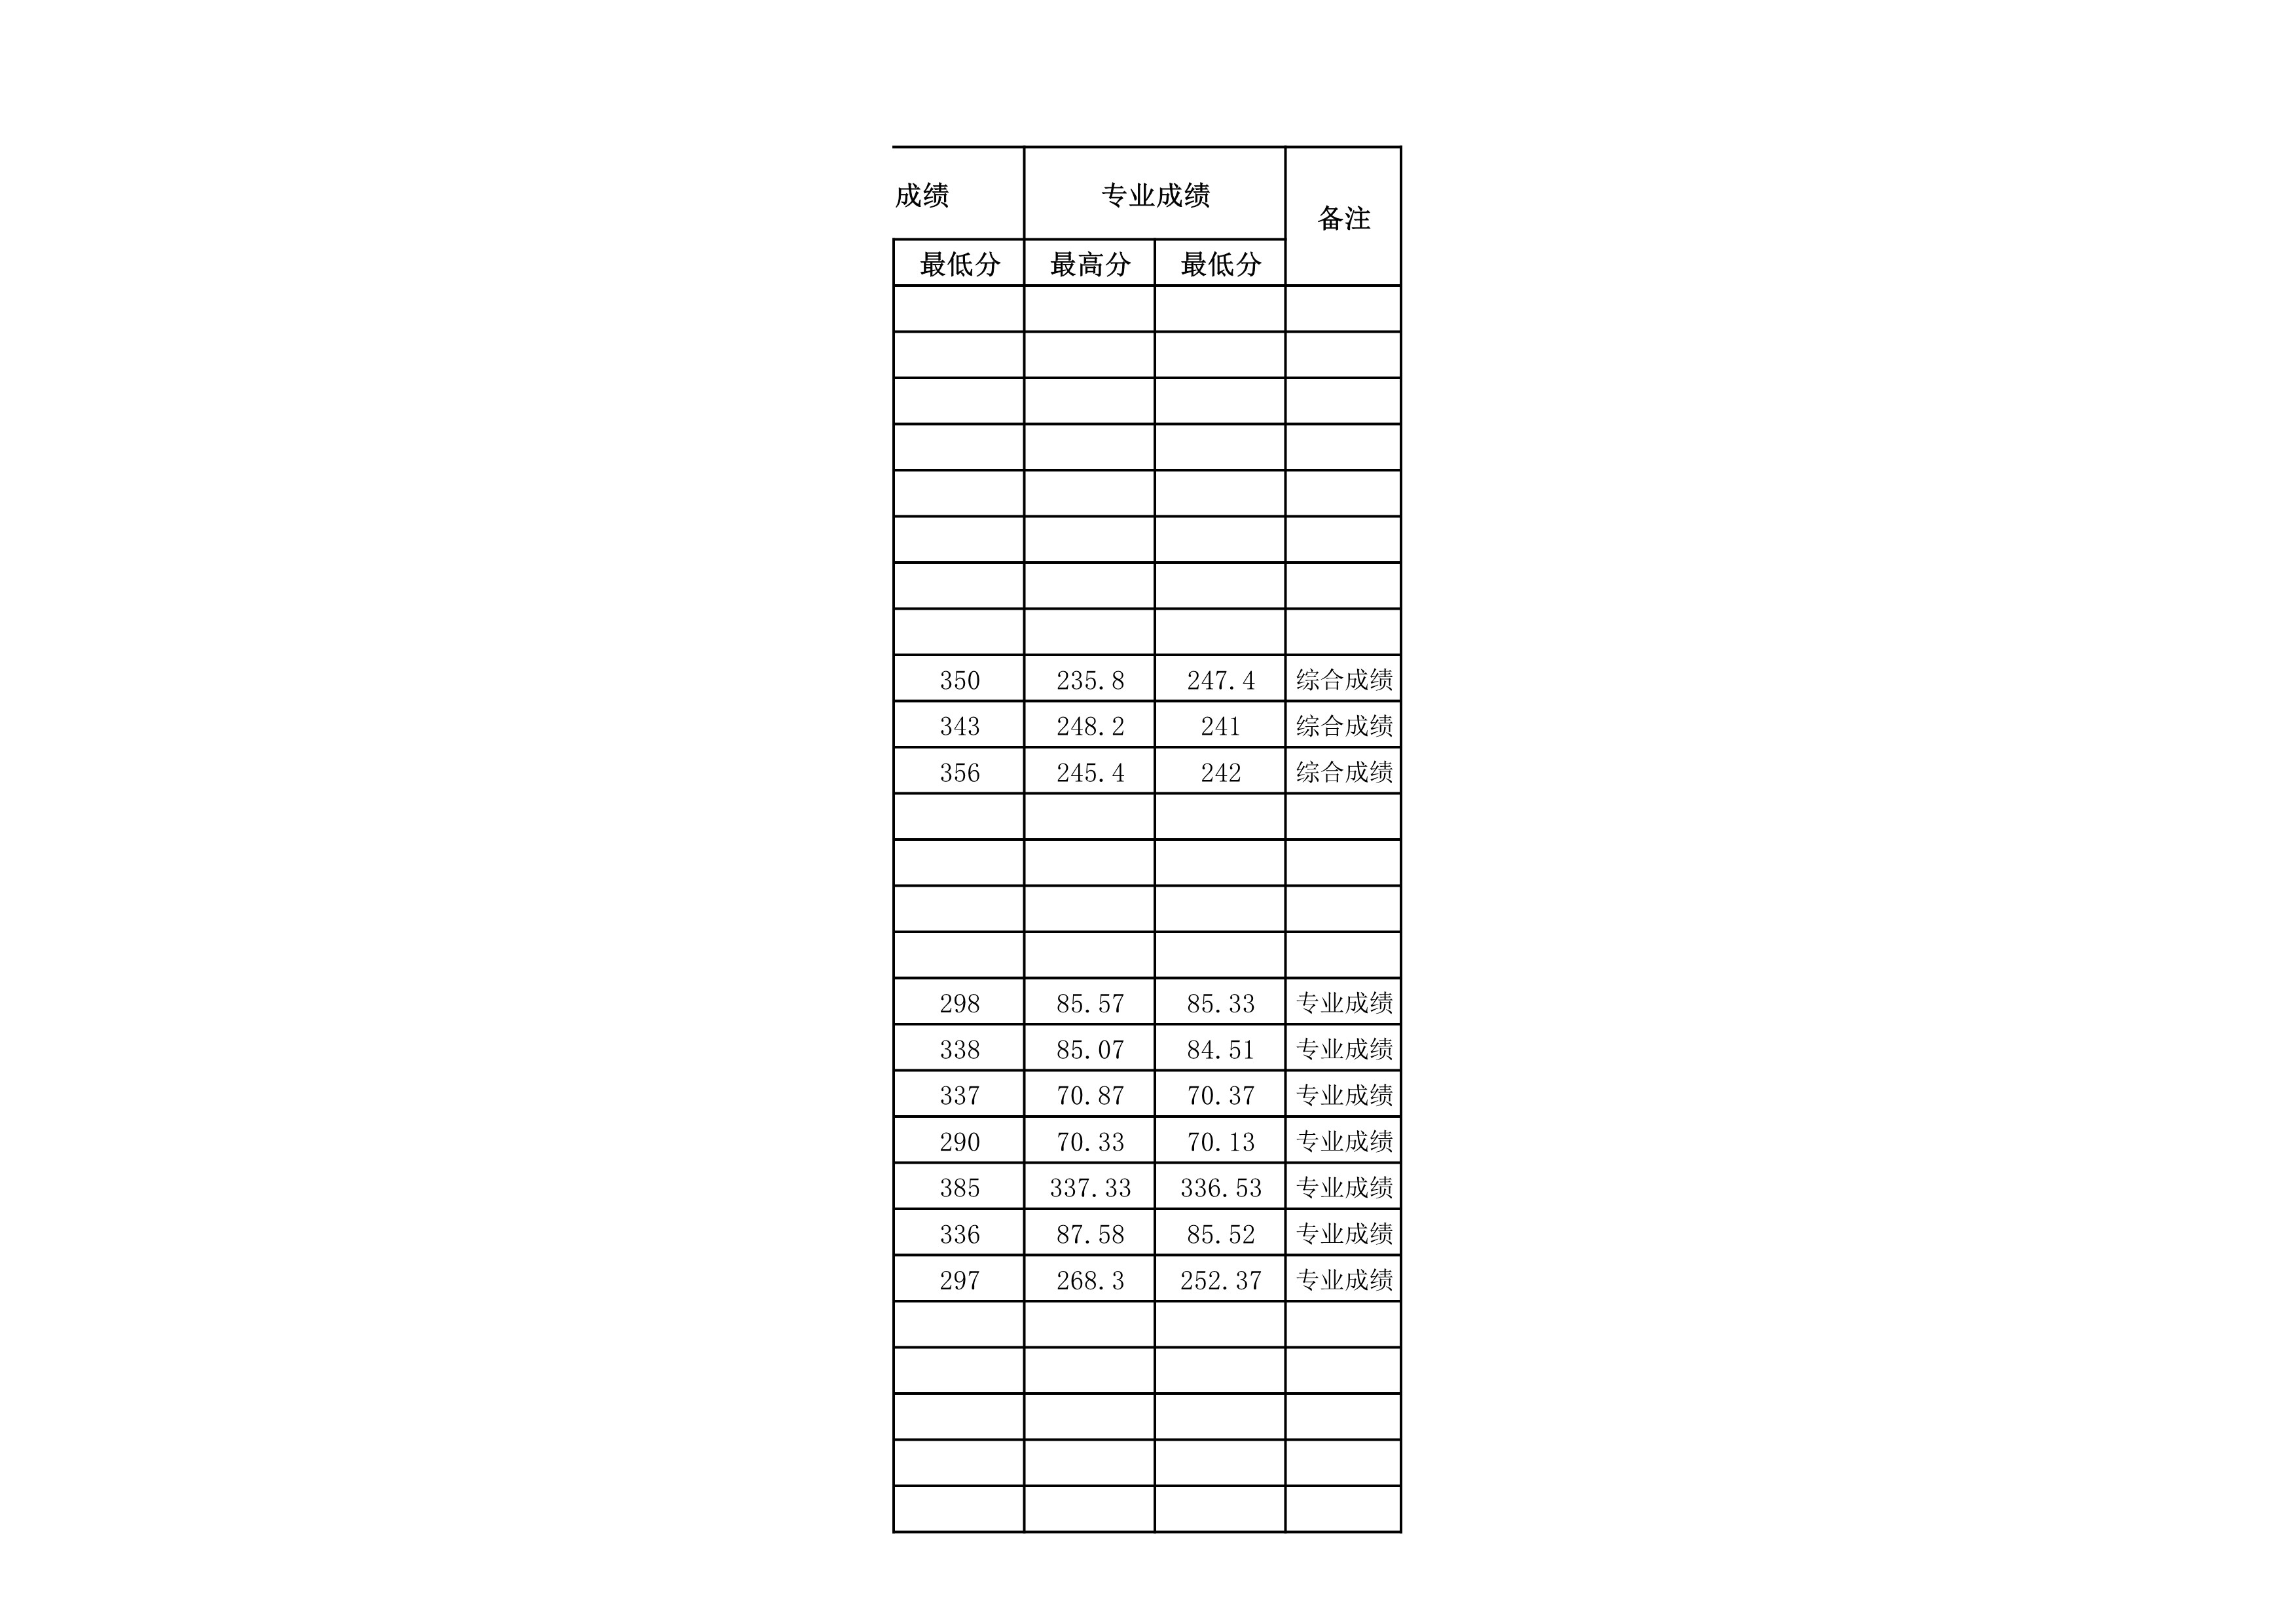 贵州民族大学2021年省外录取分数情况统计表_20220414154148_9.jpg